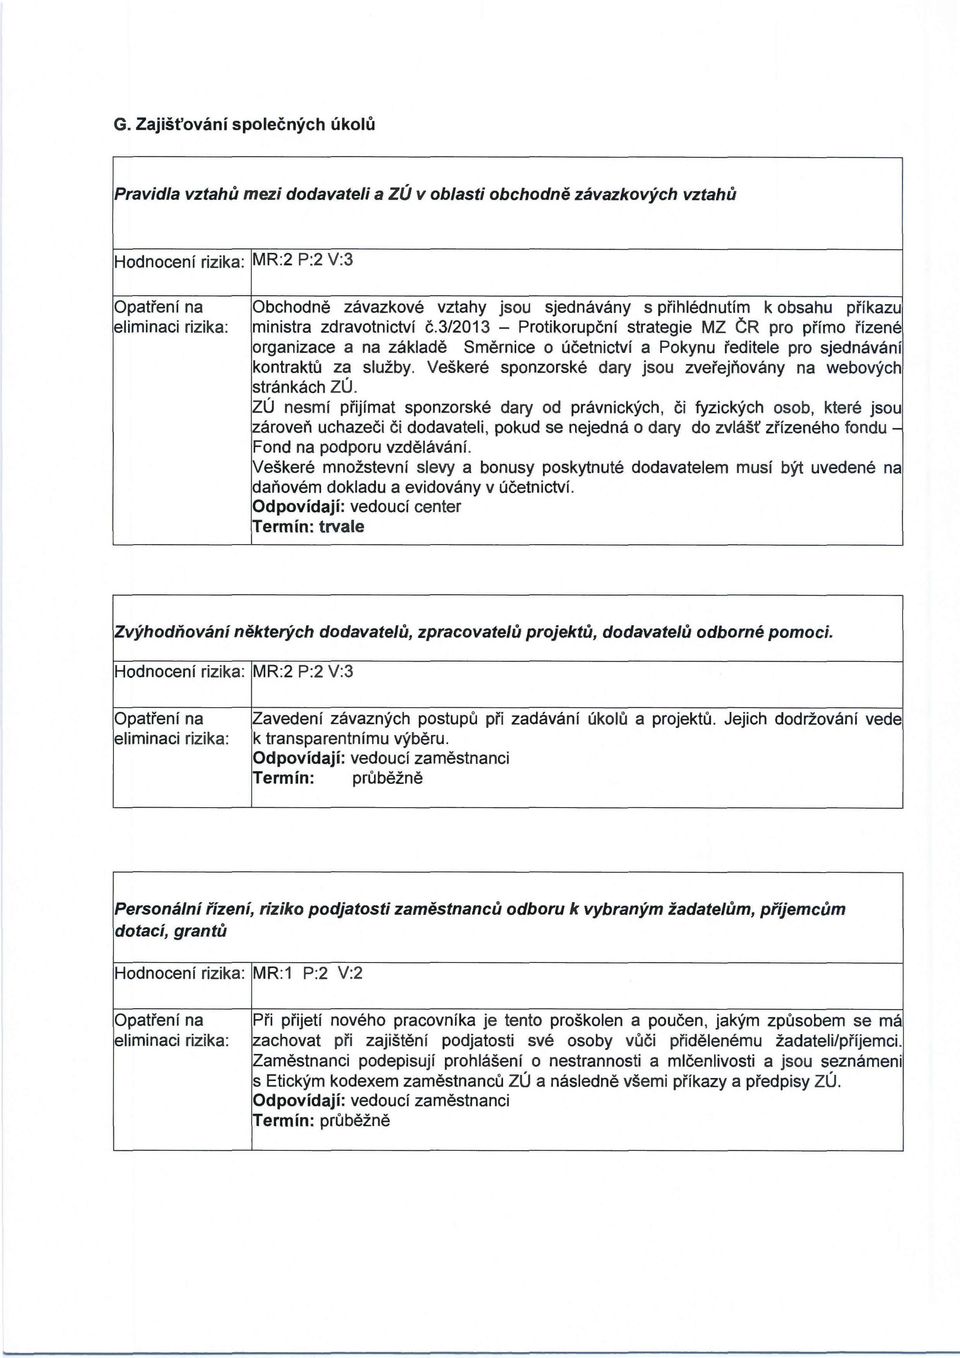 3/2013 - Protikorupční strategie MZ ČR pro přímo řízené organizace a na základě Směrnice o účetnictví a Pokynu ředitele pro sjednávání kontrakt ů za služby.